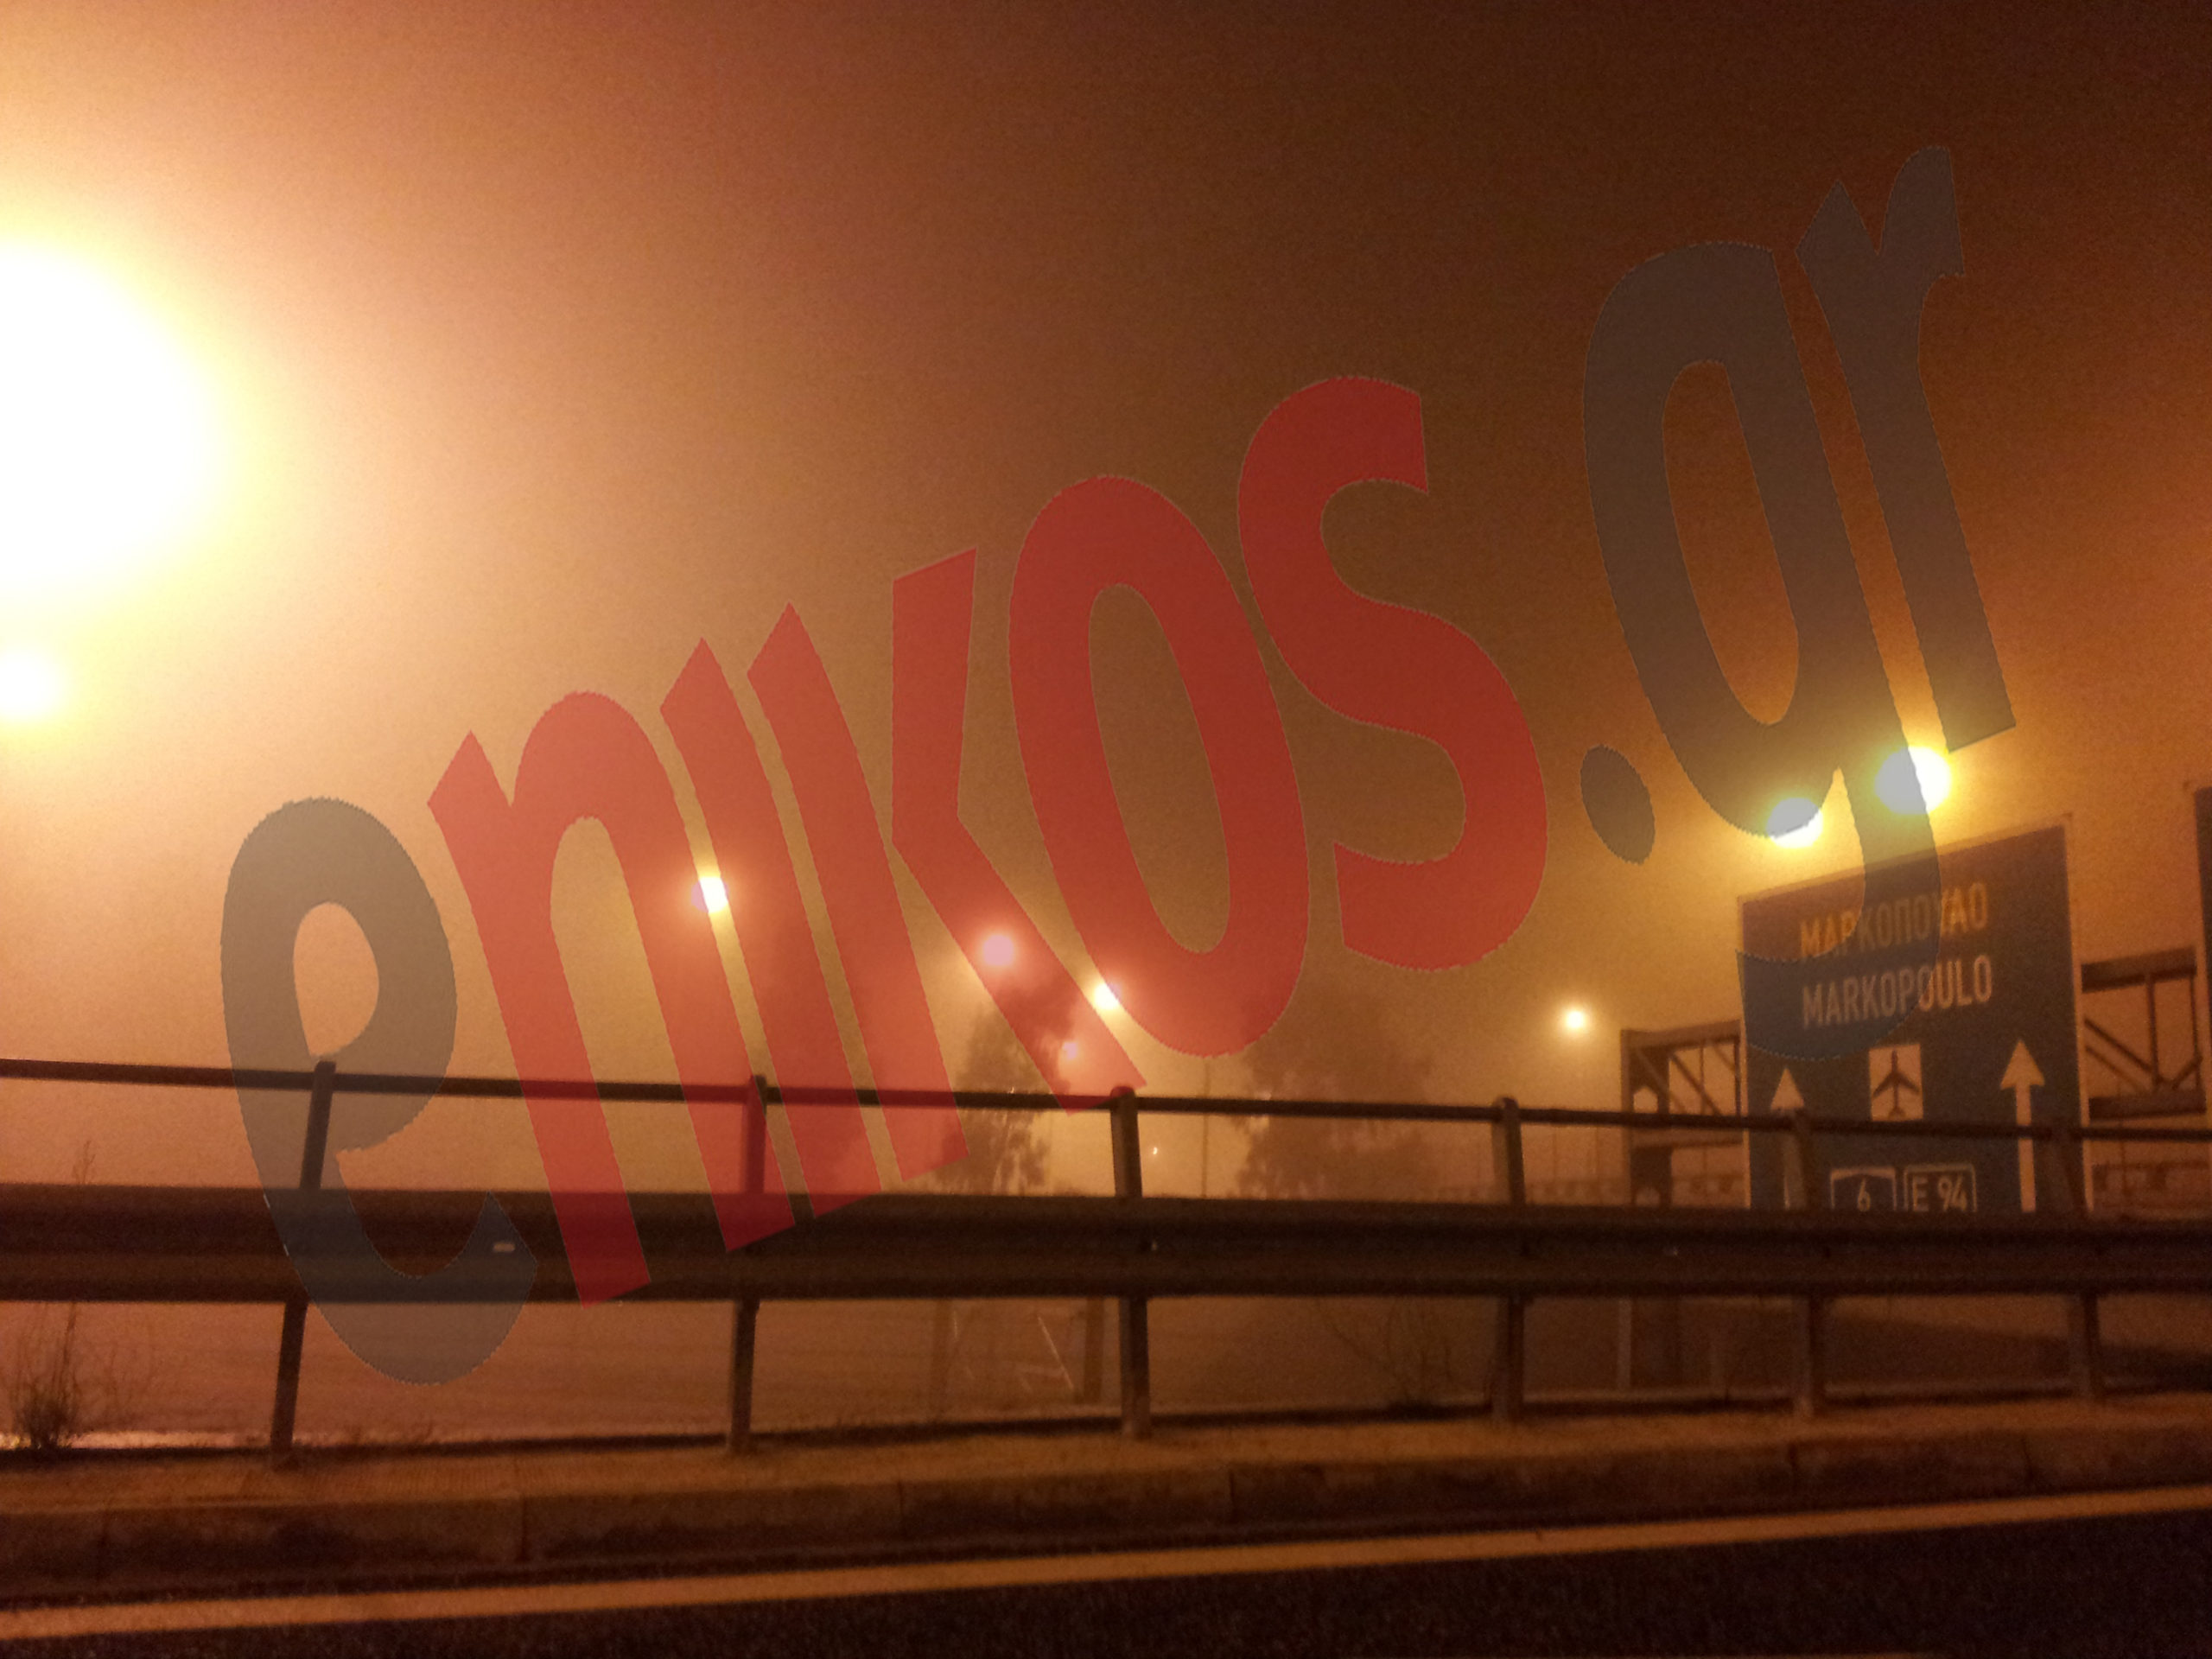 ΤΩΡΑ: Ομίχλη στην Αττική Οδό